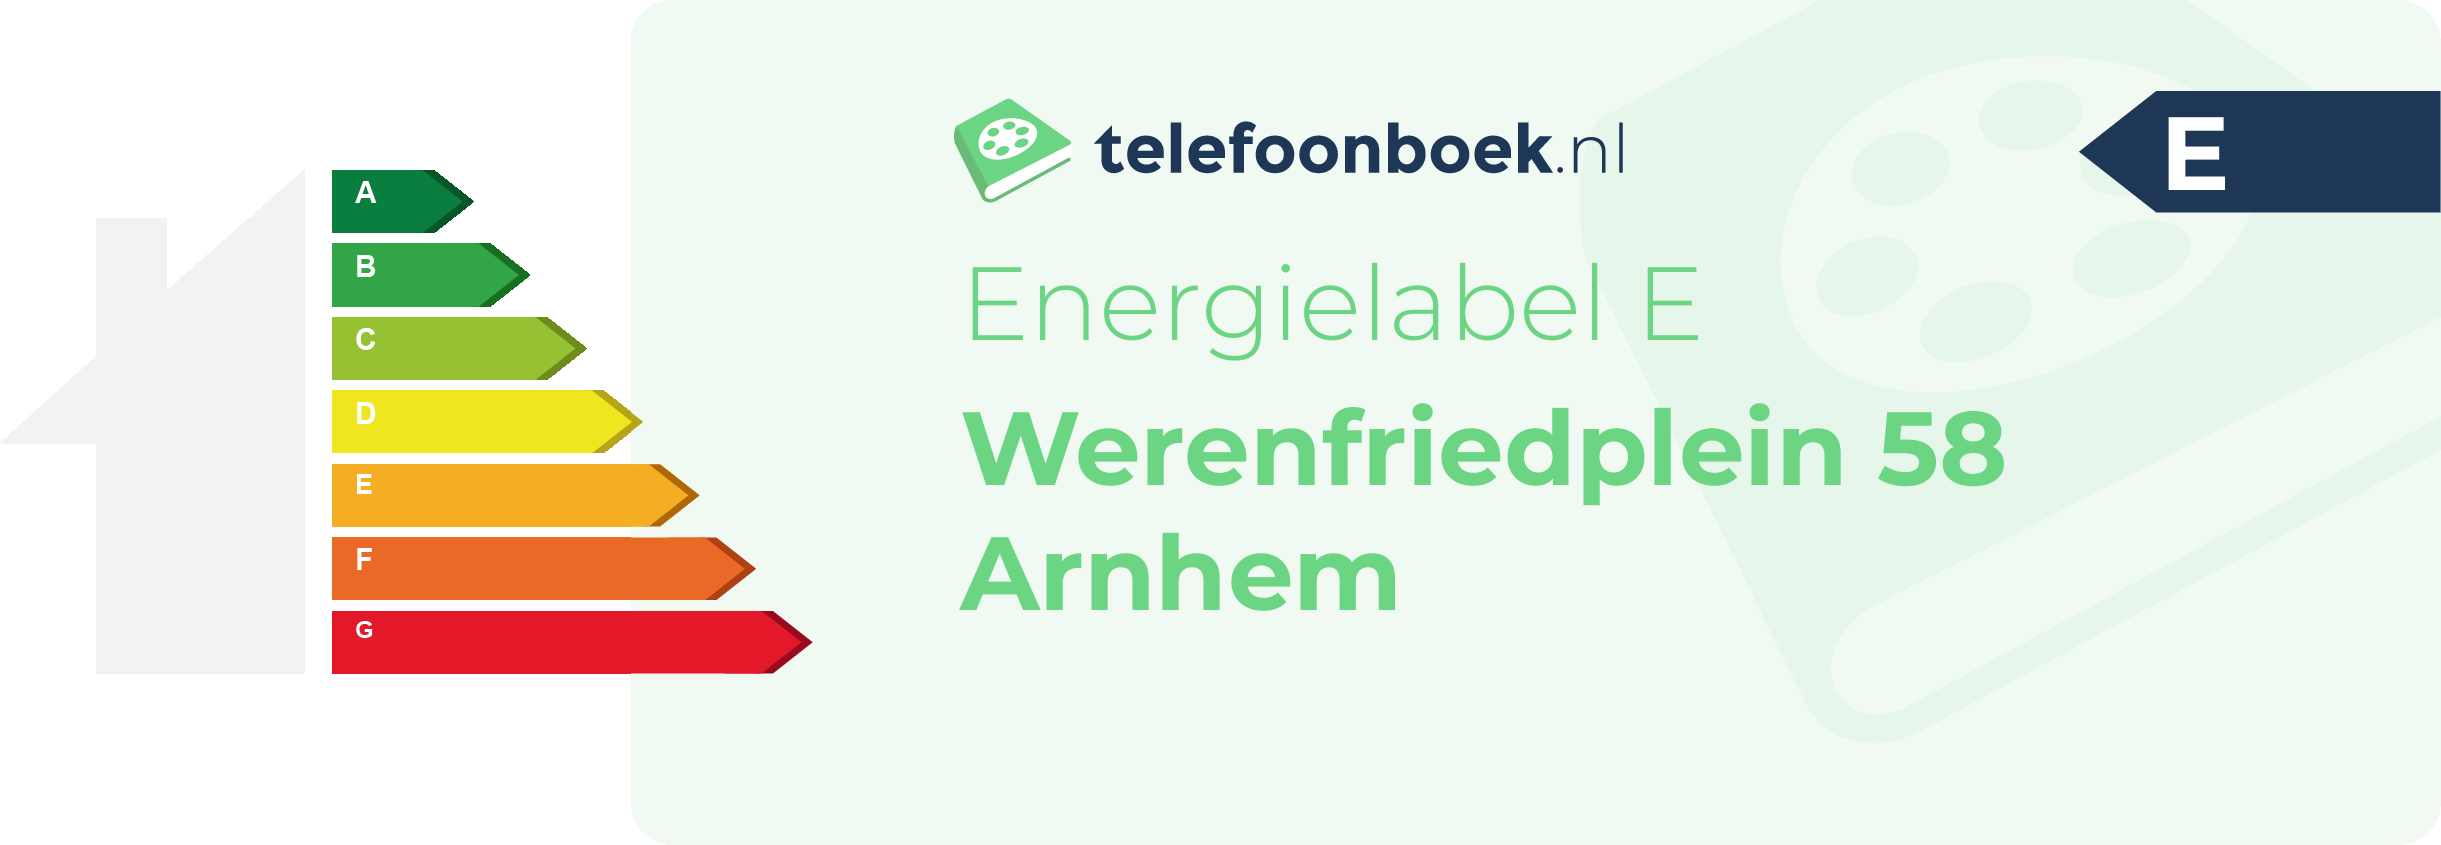 Energielabel Werenfriedplein 58 Arnhem